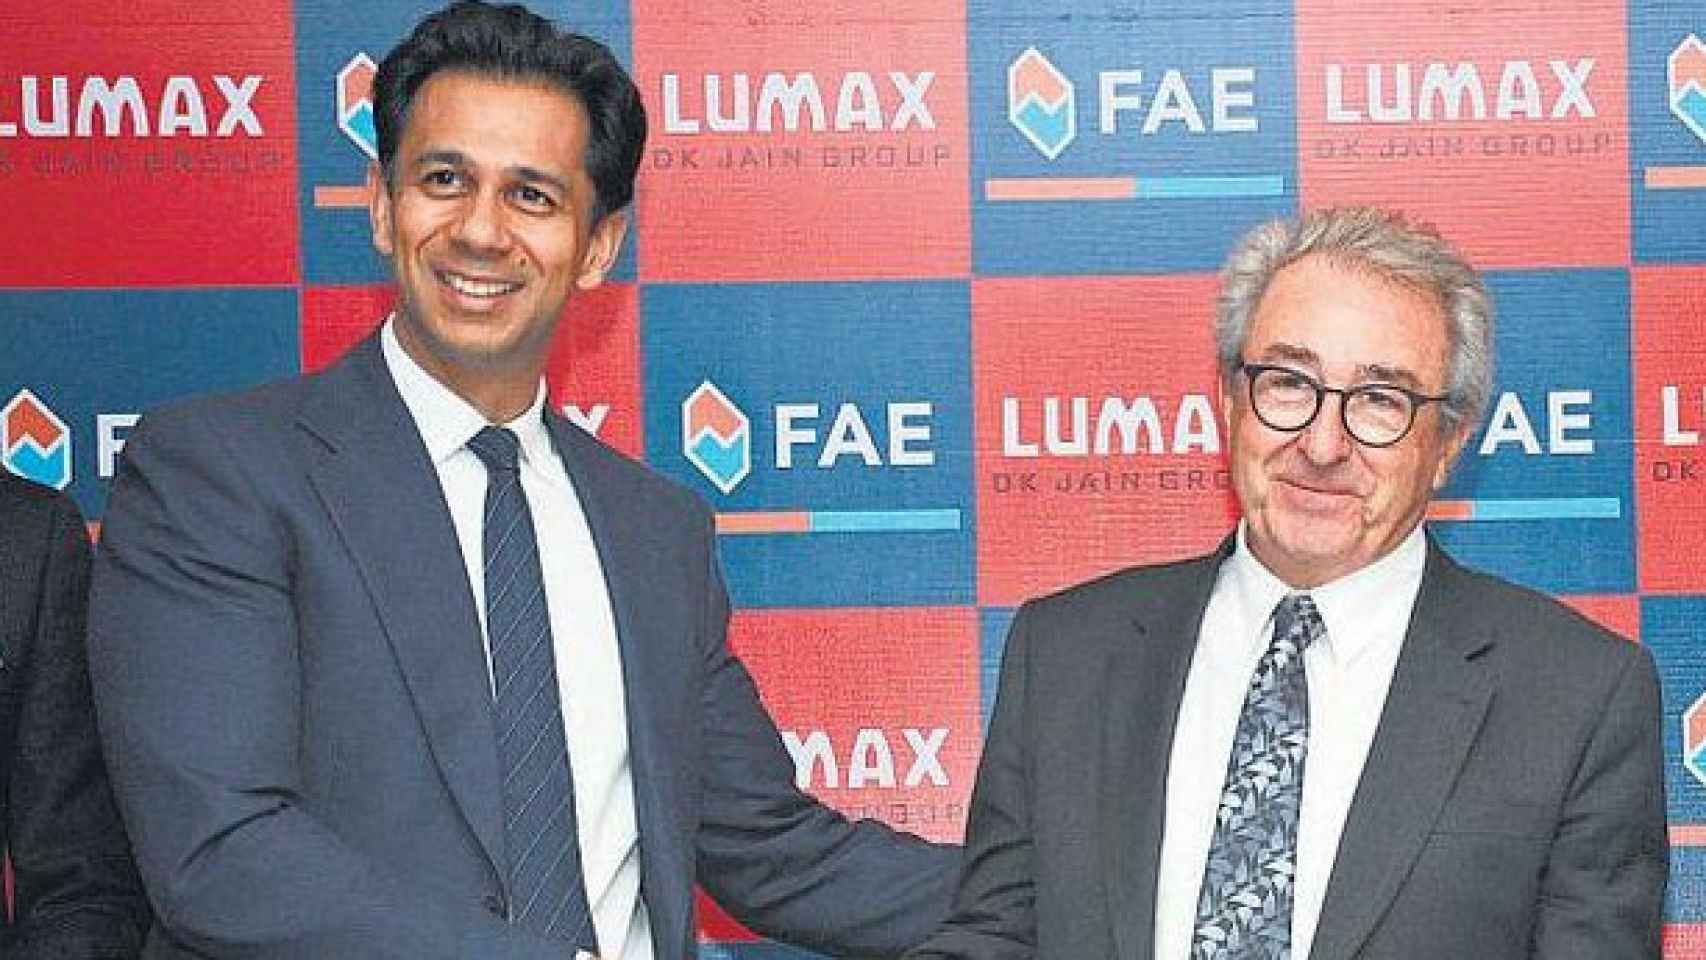 El presidente de Lumax, Deepack Jain, firma la alianza con Francisco Marro, presidente de FAE / Lumax